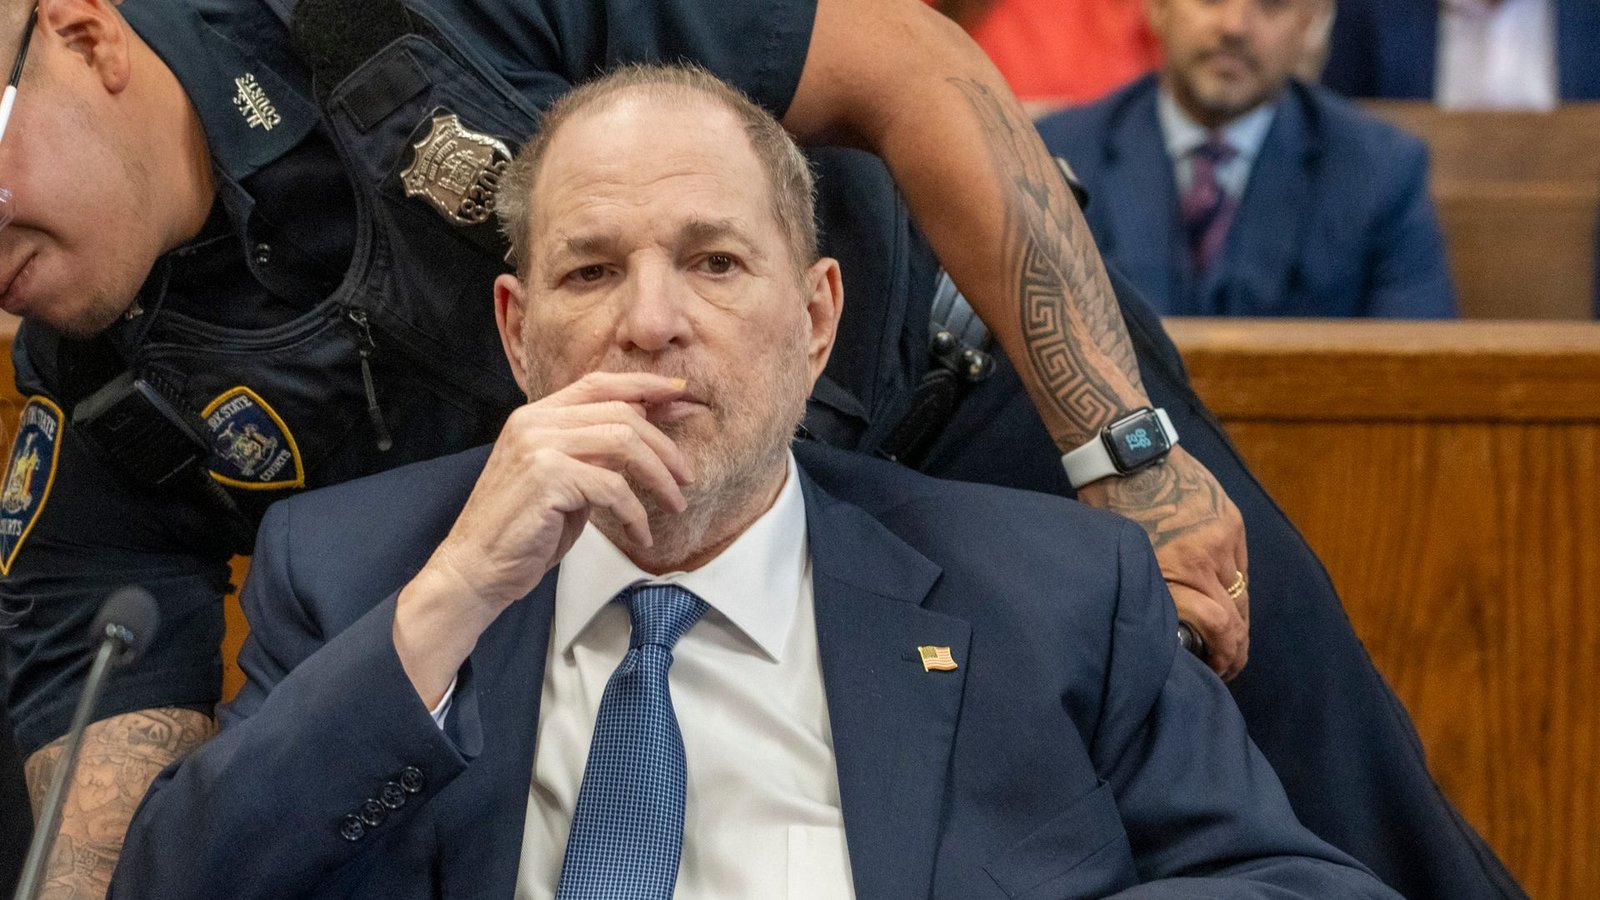 Harvey Weinstein erscheint zu einer vorläufigen Anhörung vor dem Strafgericht in Manhattan.Foto: Steven Hirsch/Pool New York Post / AP/dpa